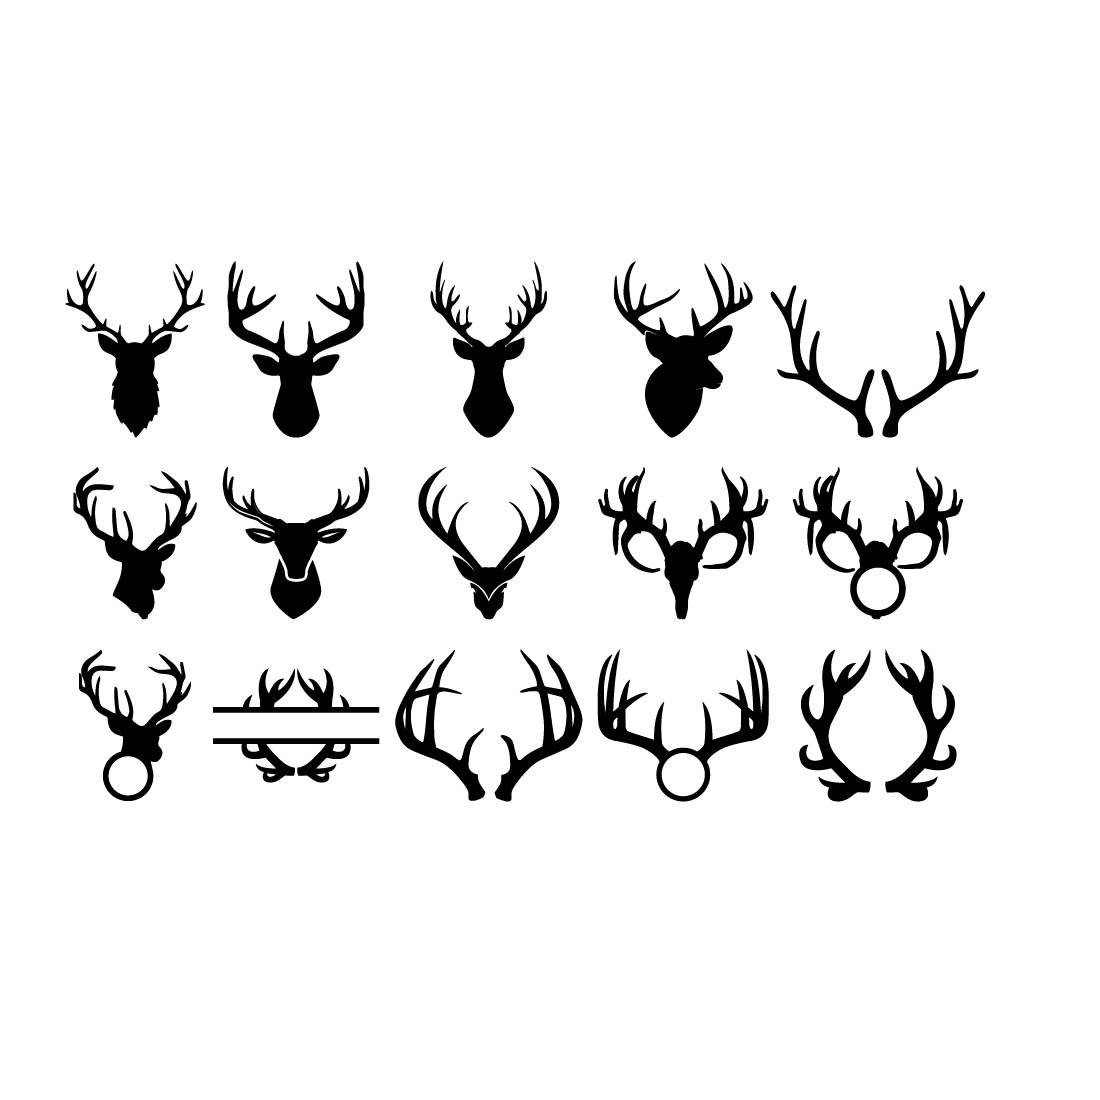 Deer Antlers SVG, Deer Antlers Clipart, Antlers Svg, Deer Antlers Cut File, Antlers Cricut, Hunting Svg, Wildlife Svg, Digital Download, Png preview image.